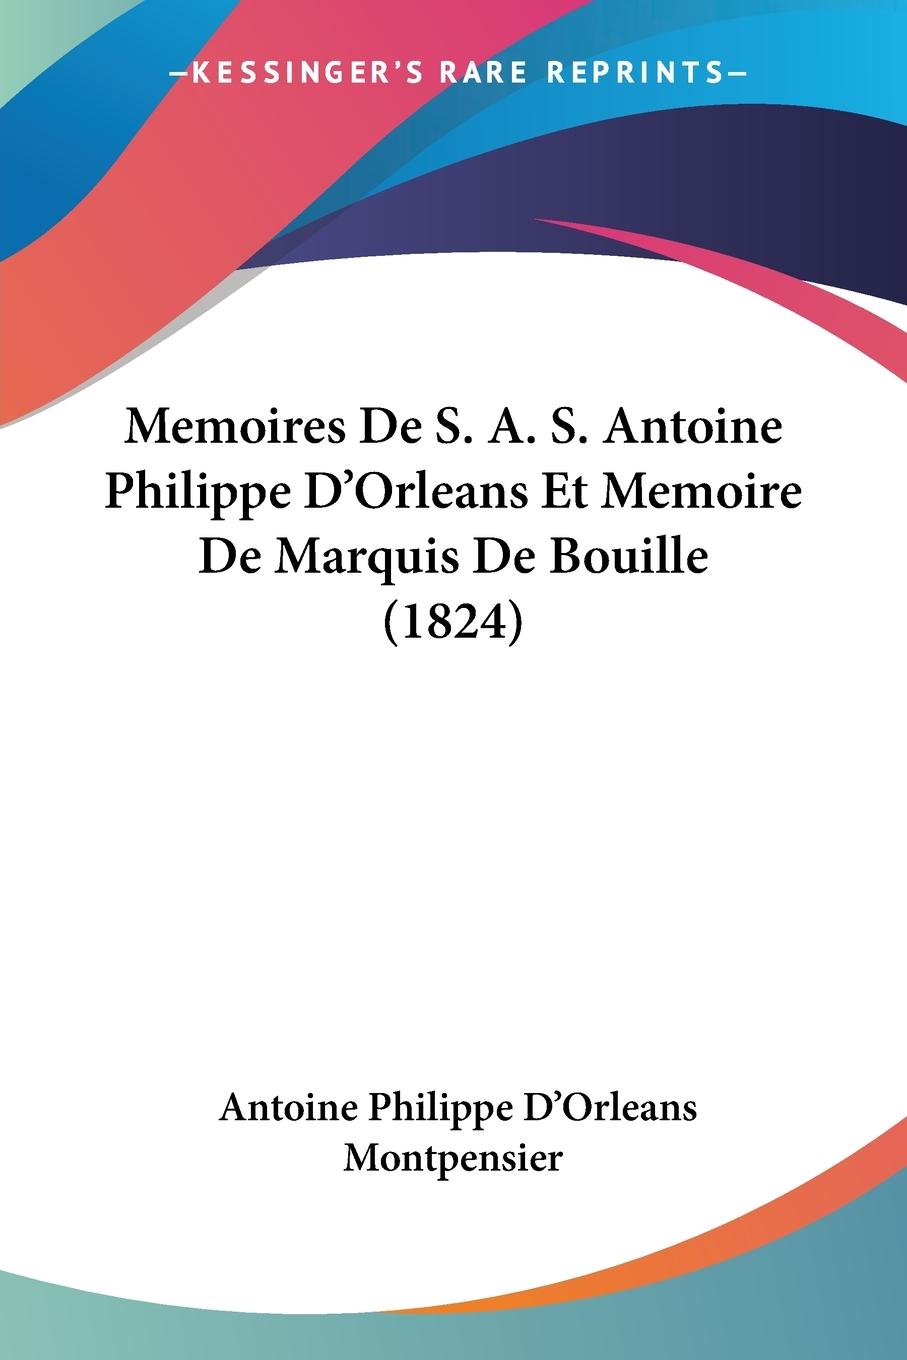 Memoires De S. A. S. Antoine Philippe D Orleans Et Memoire De Marquis De Bouille (1824) - Montpensier, Antoine Philippe D Orleans